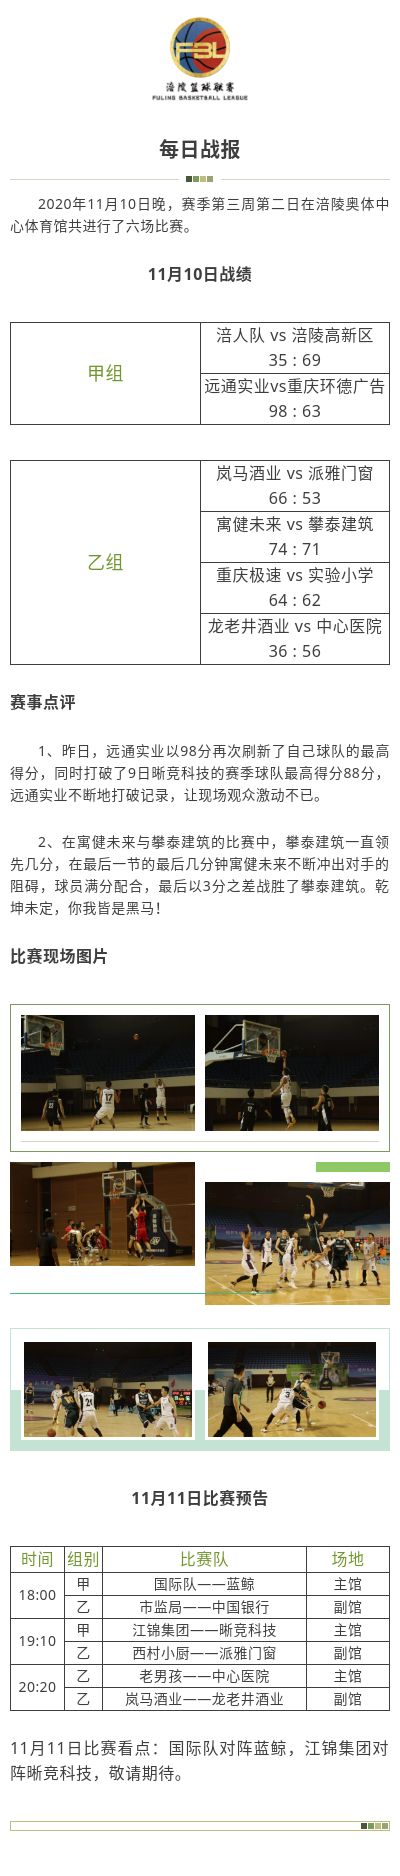 涪陵高新区·涪陵篮球联赛（FBL）2020赛季每日战报11.10